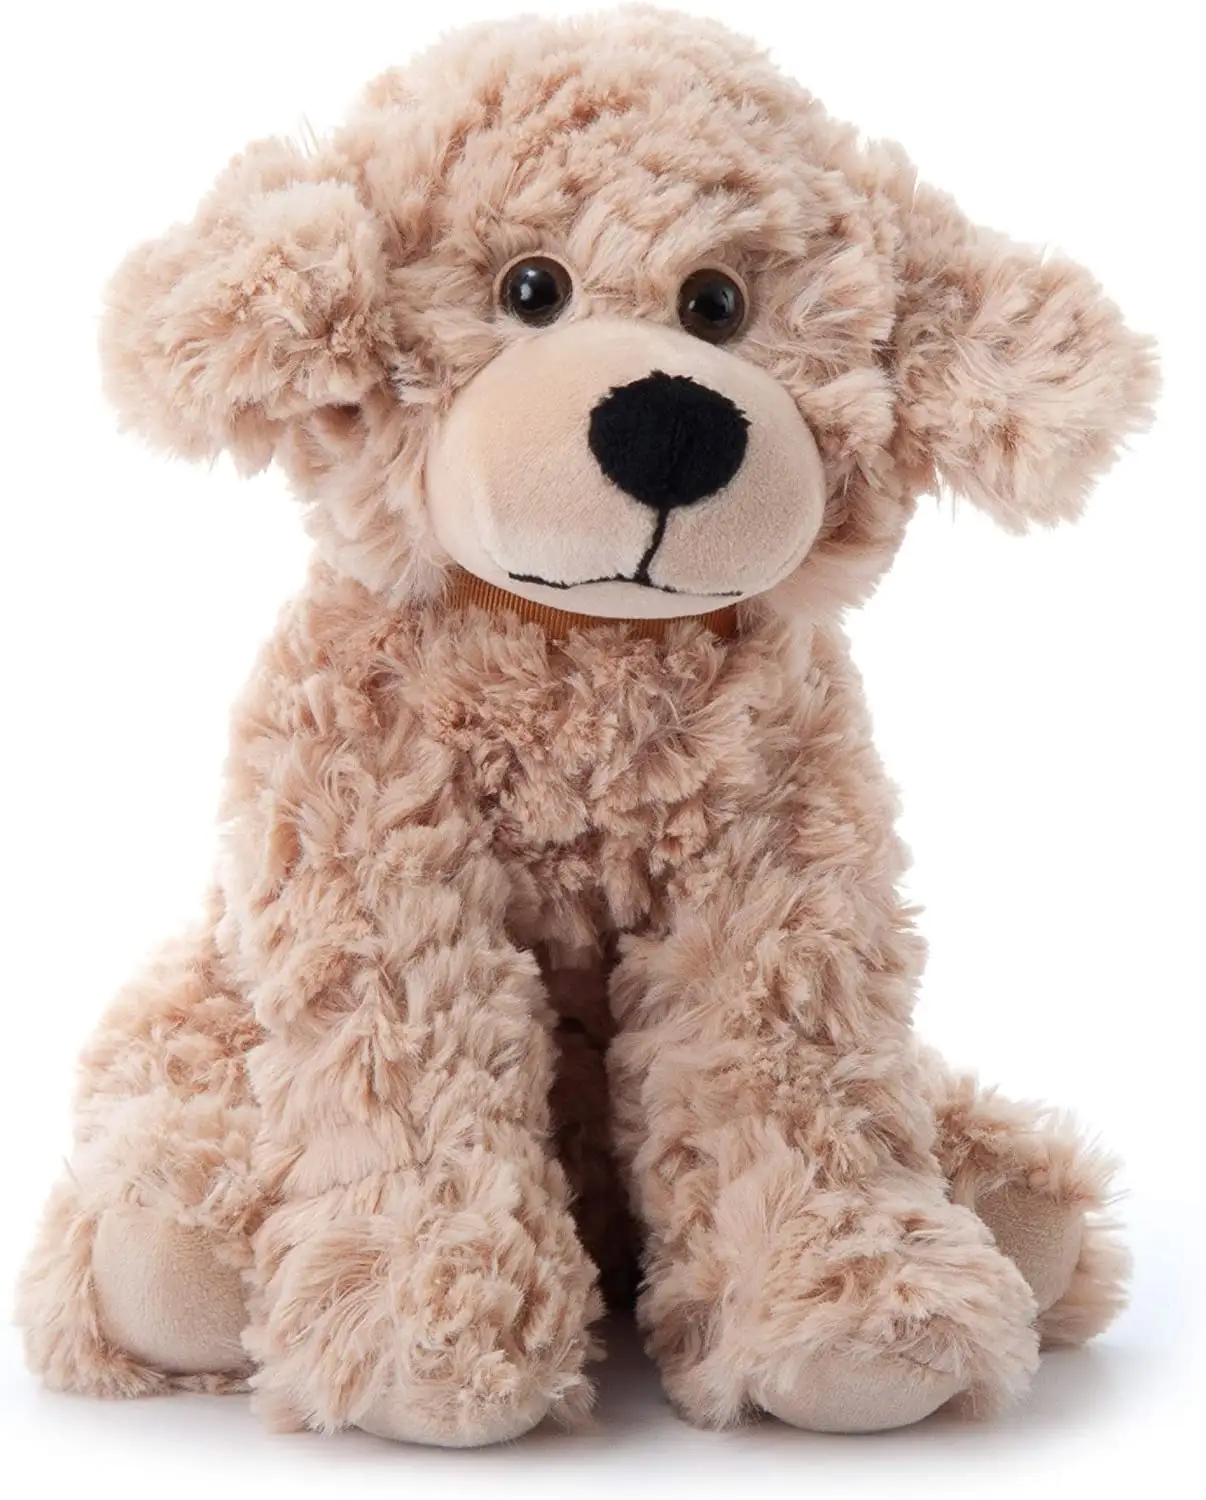 La migliore qualità a buon mercato carino morbido personalizzato piccolo cucciolo di cane farcito giocattoli peluche giocattolo per bambini per ragazze ragazzi